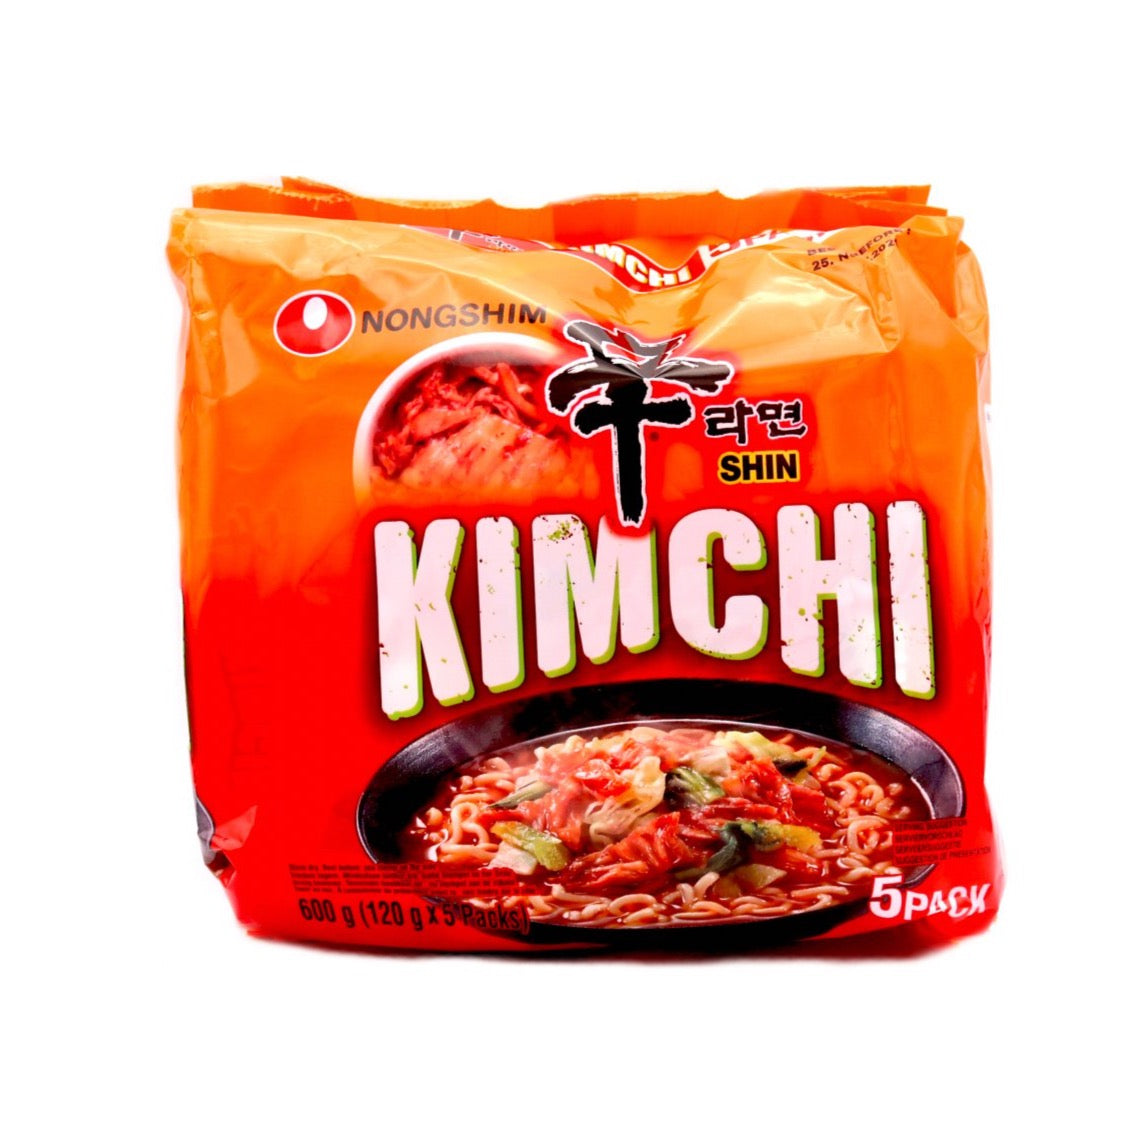 Korean instant noodle soup with kimchi - Nongshim